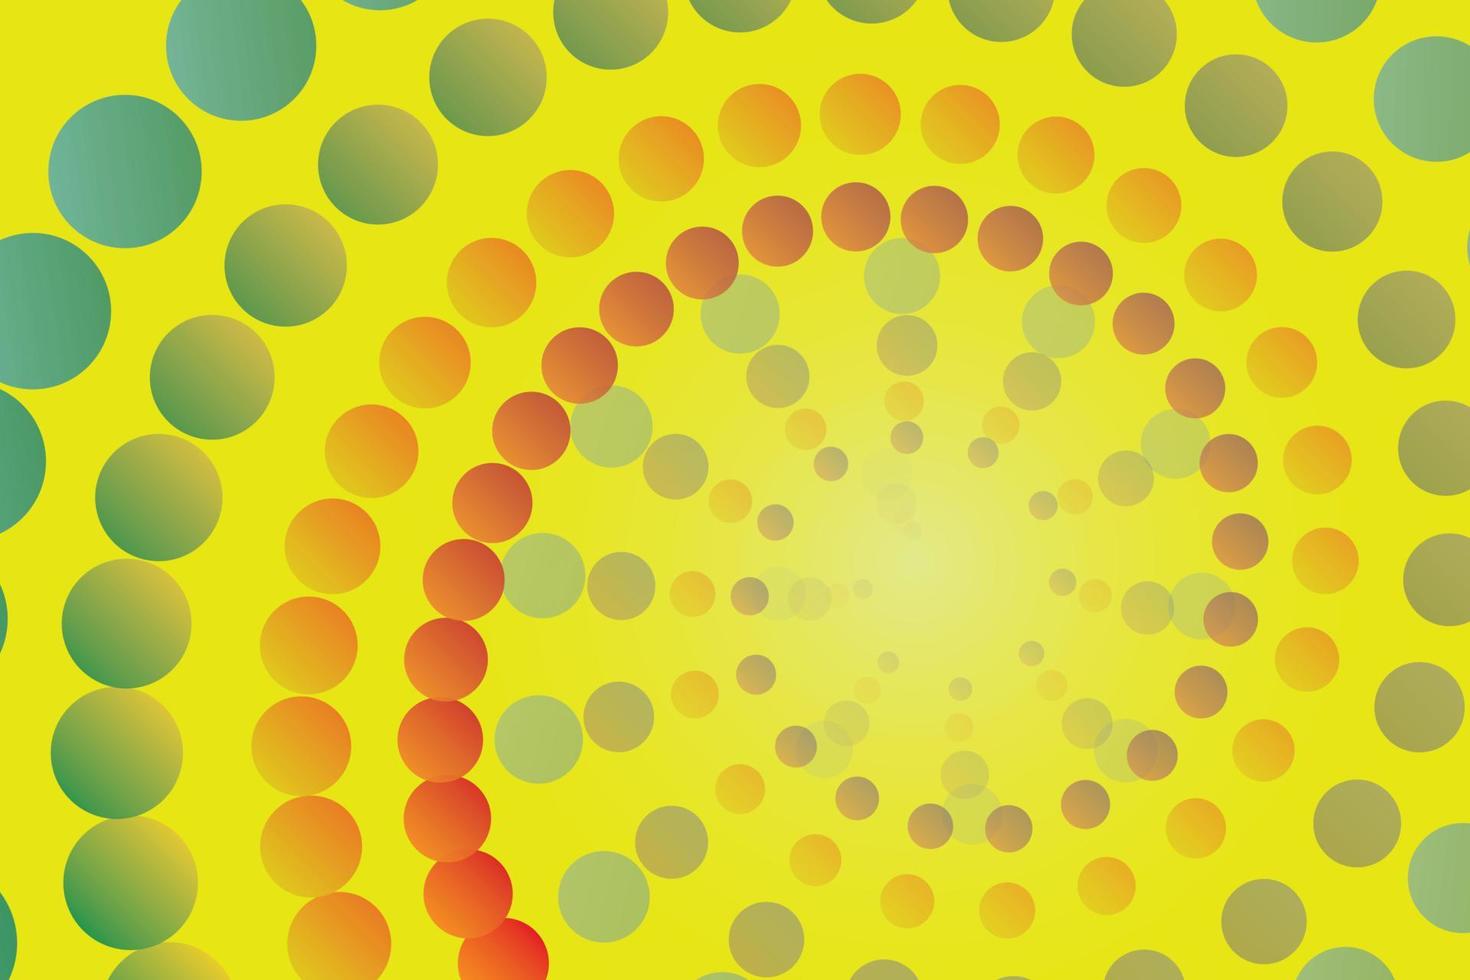 abstrakter Hintergrundkreis, der klein, groß und in verschiedenen Farben ist. Spirale aus der Mitte des Bildes mit gelbem Hintergrund. vektor